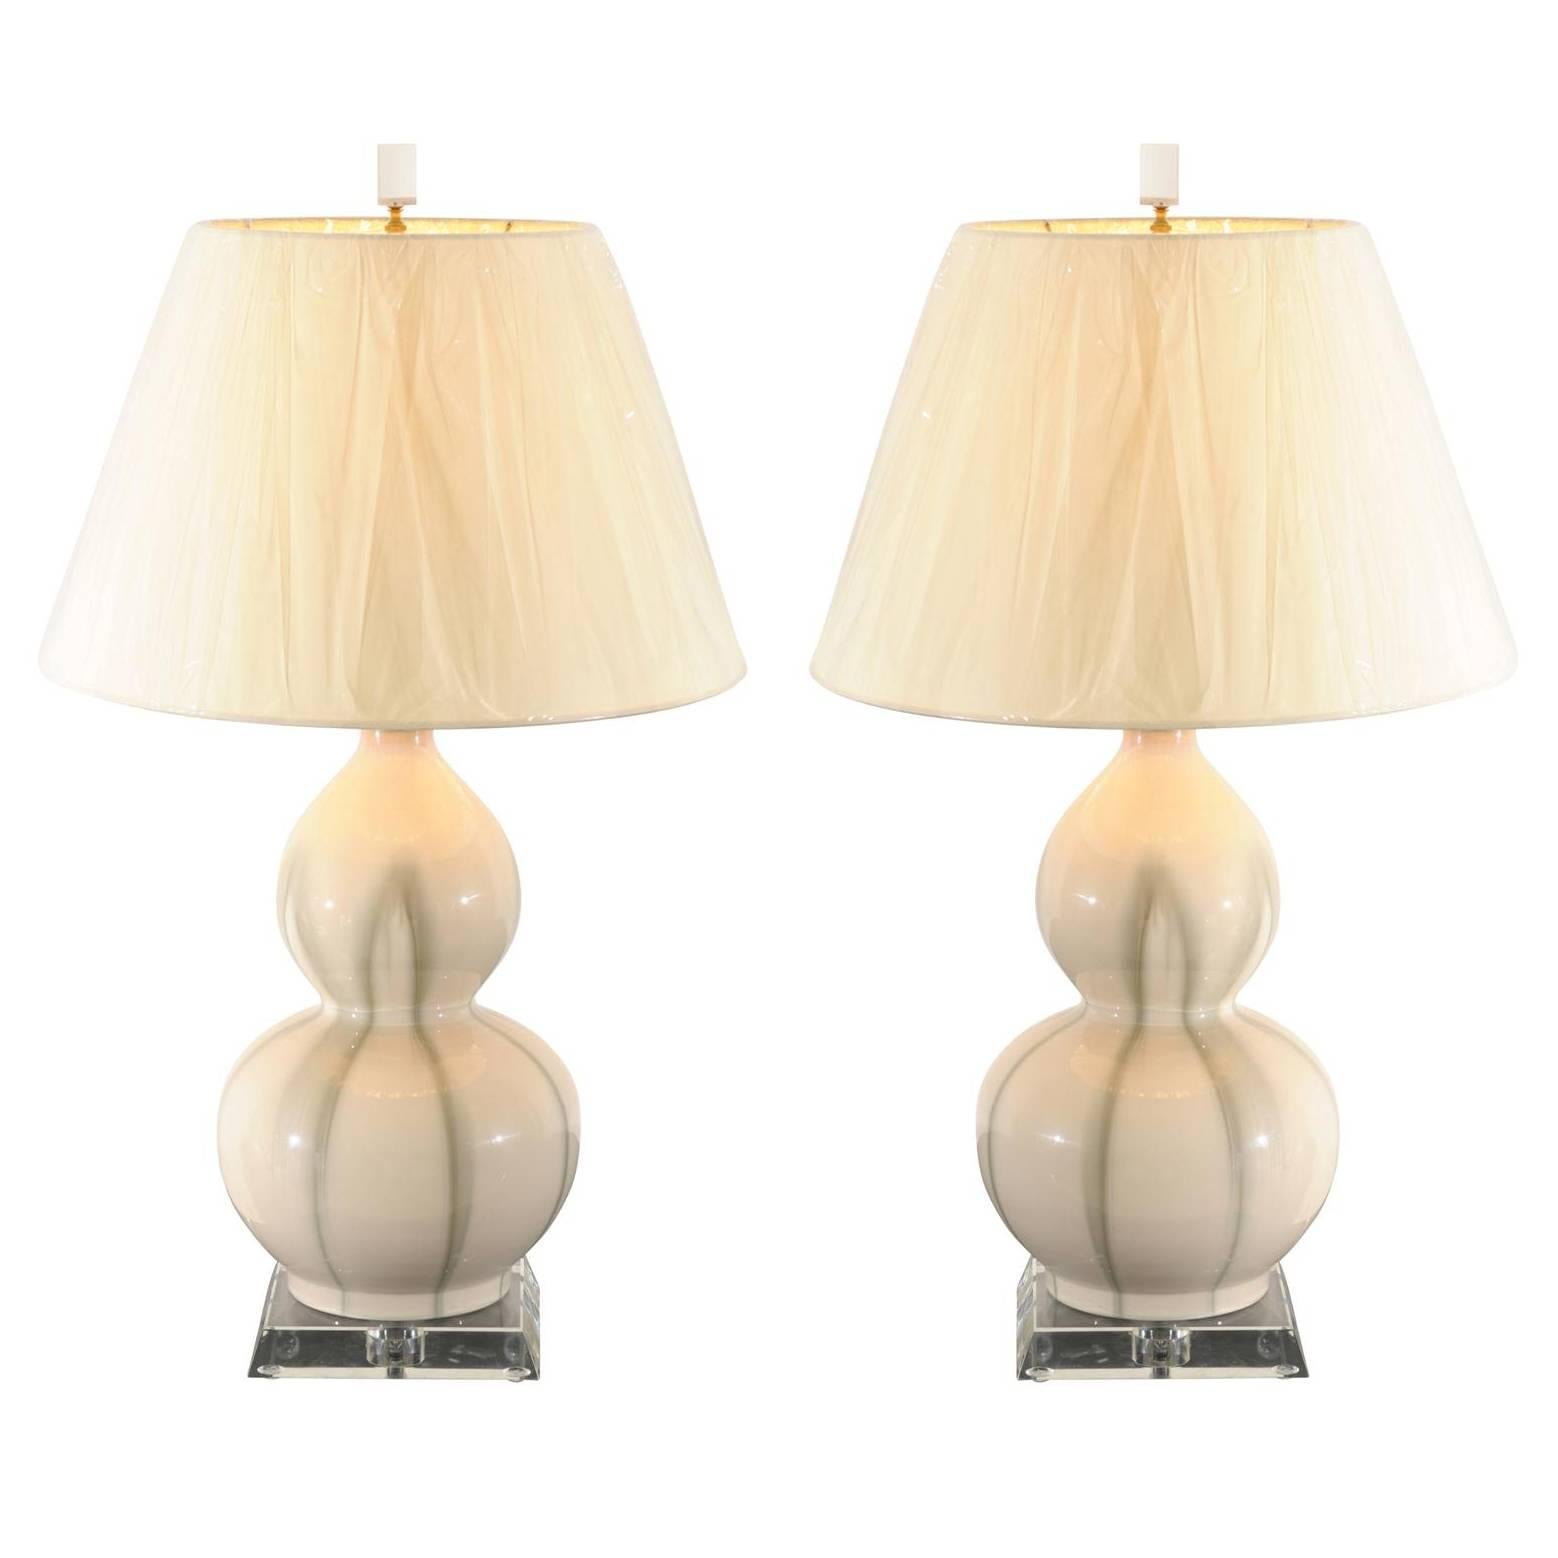 Pair of Ceramic Gourd Lamps in Cream and Celadon